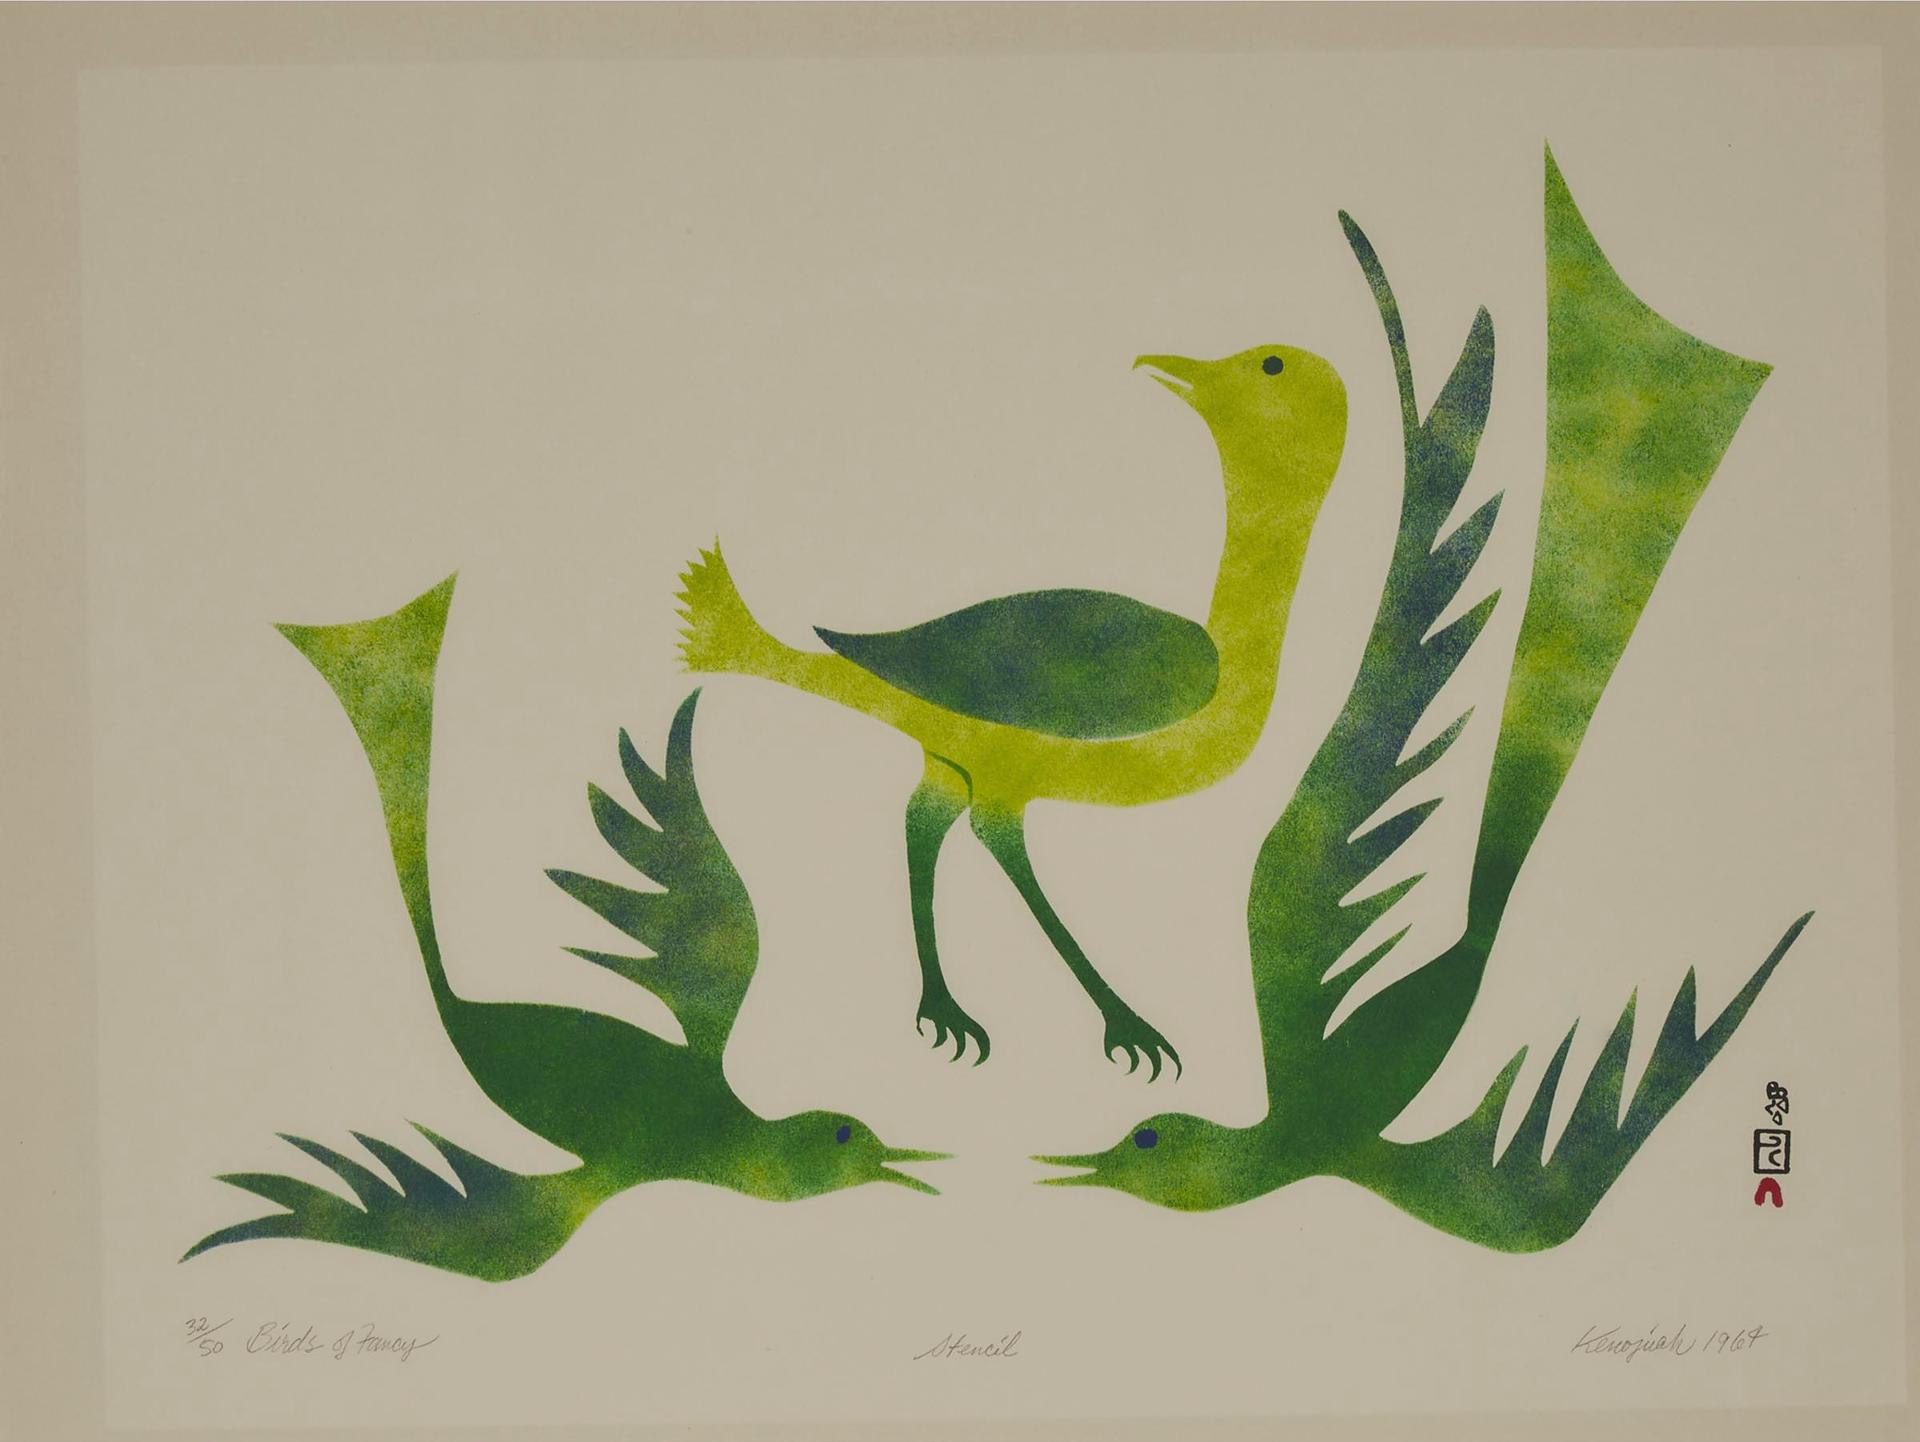 Kenojuak Ashevak (1927-2013) - Birds Of Fancy